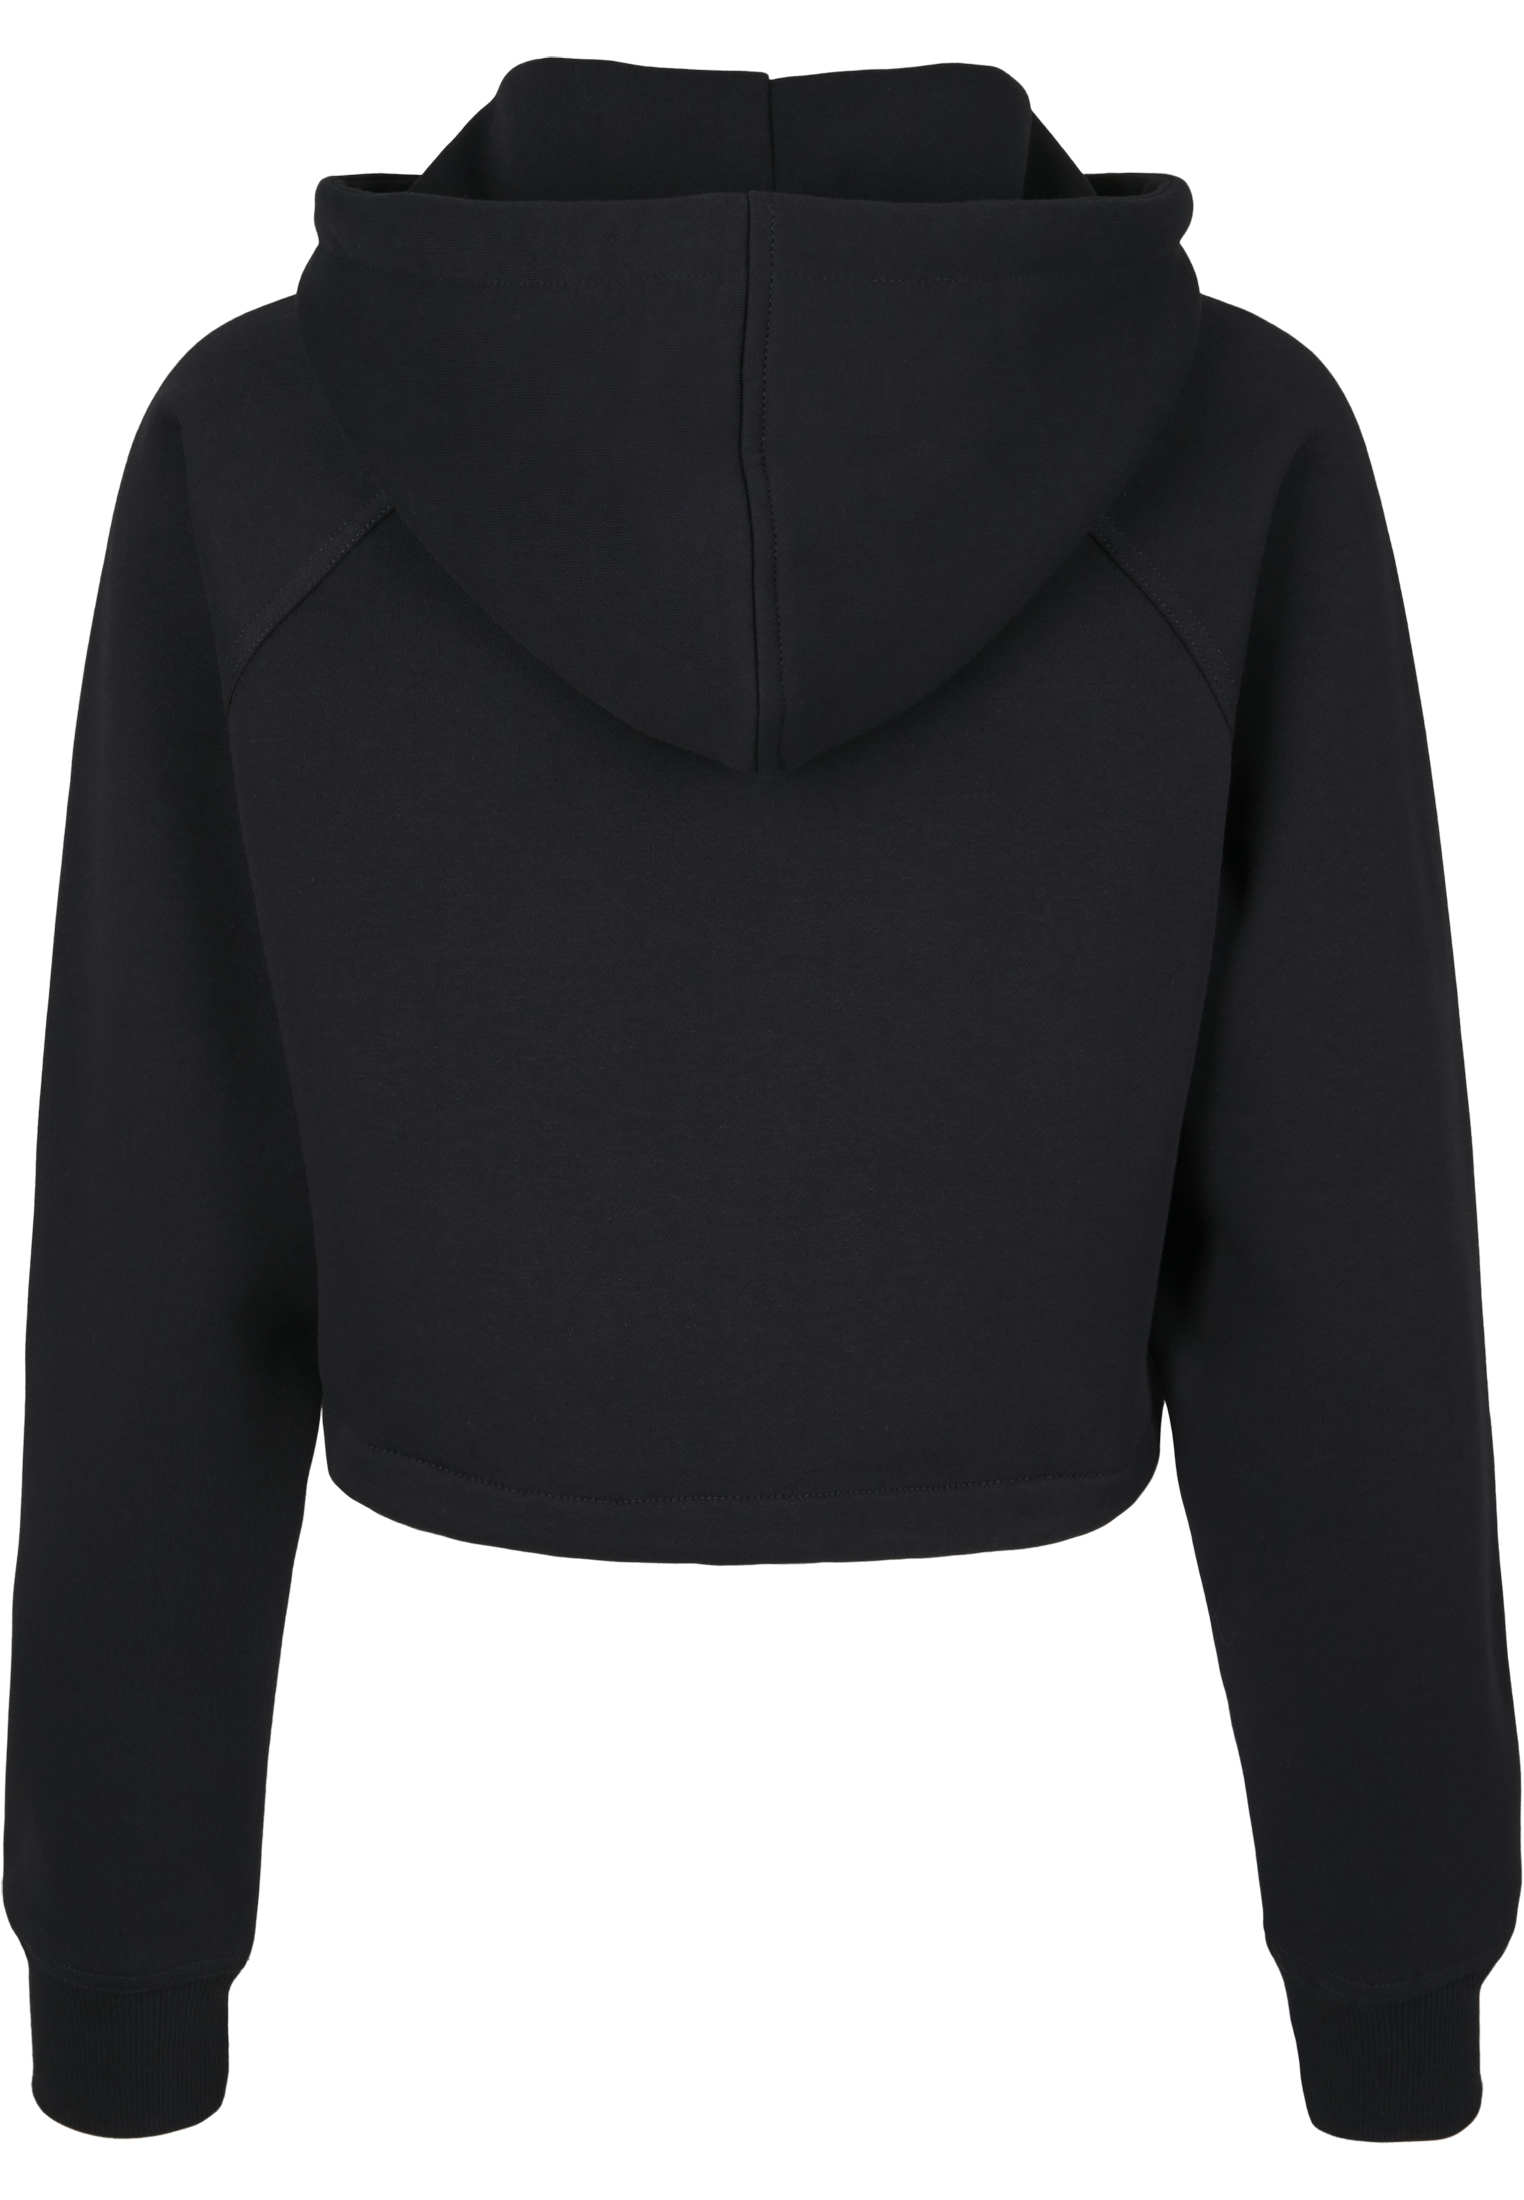 Zip Hoodies Ladies Oversized Short Raglan Zip Hoody in Farbe black